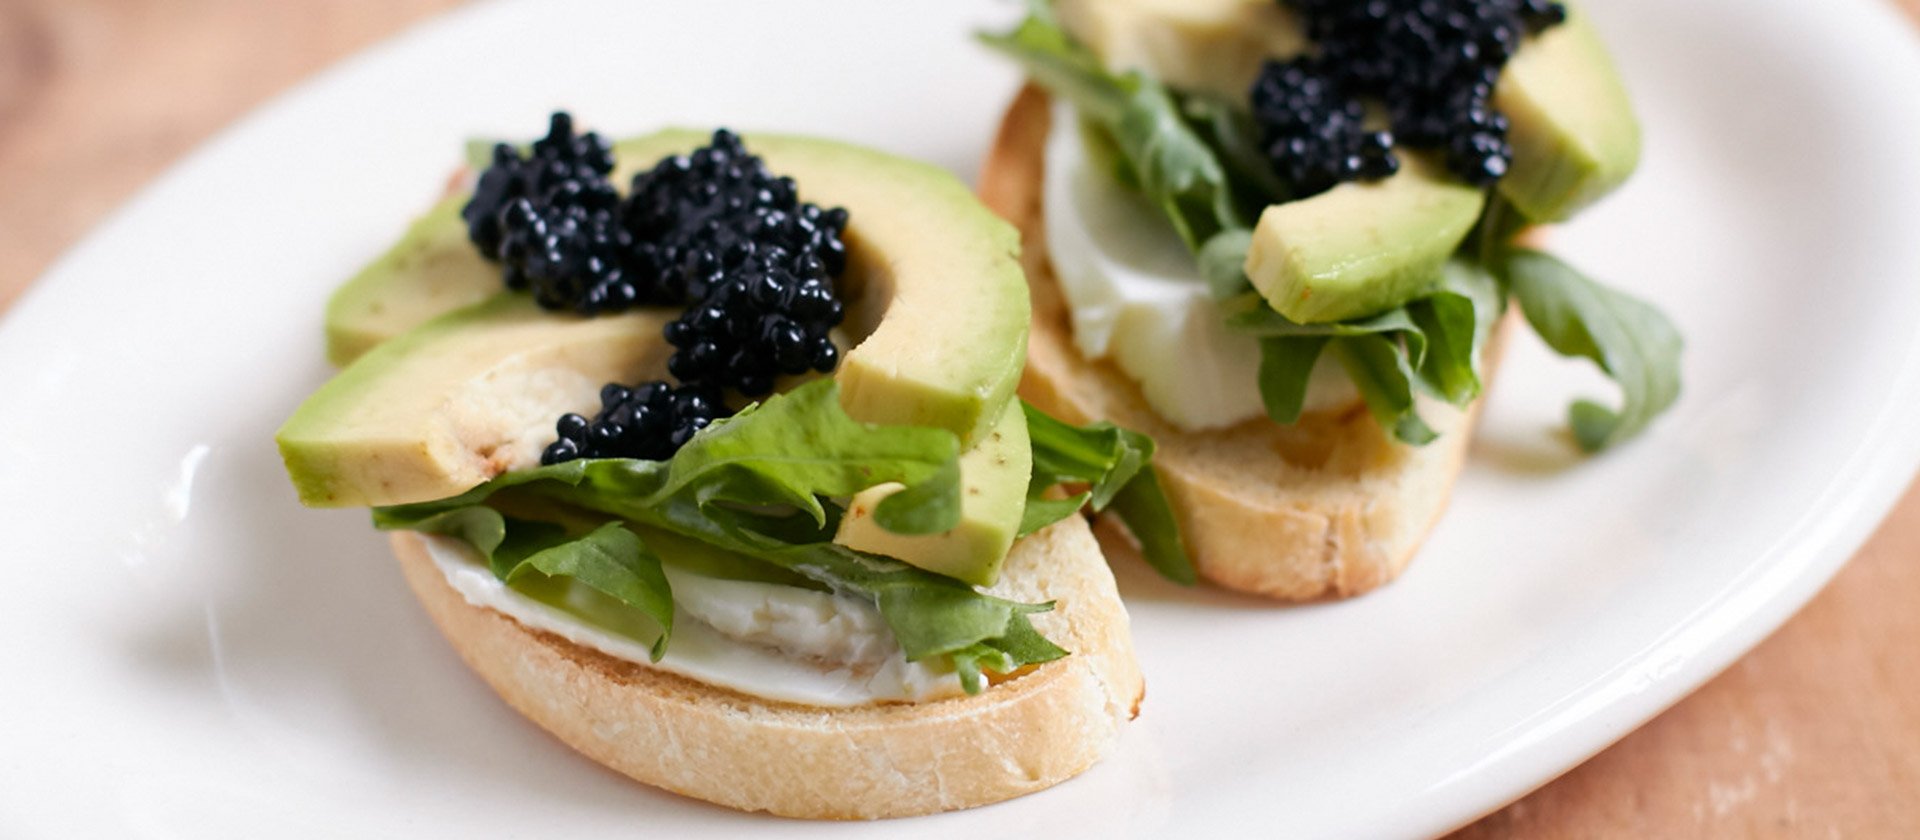 Avocado-Rucola-Schnittchen mit vegetarischem Caviar